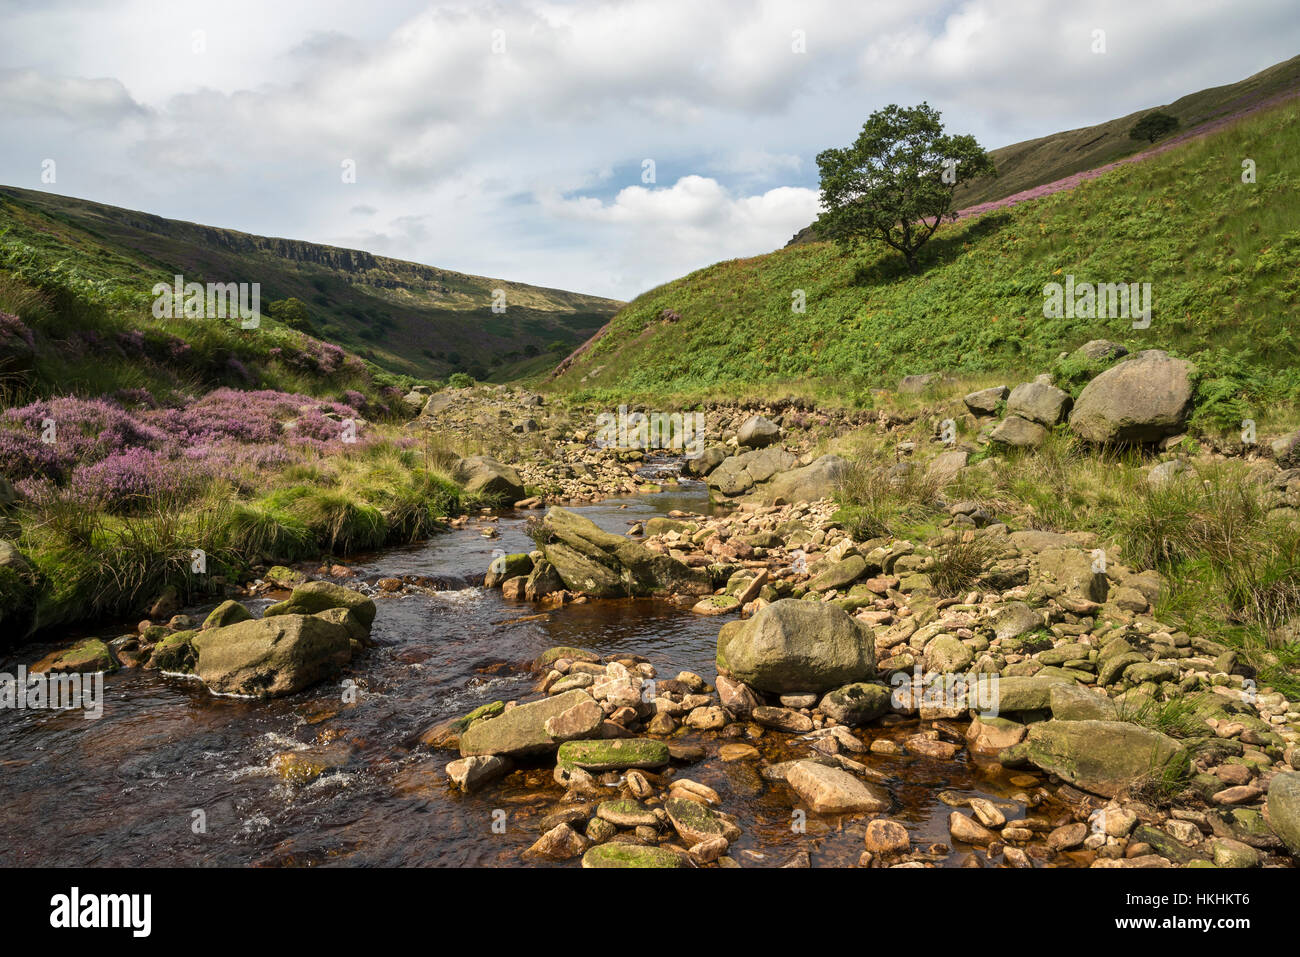 Sommer am Crowden in North Derbyshire. Lila Heidekraut blühen um Felsen in dieser dramatischen und schroffe Landschaft. Stockfoto